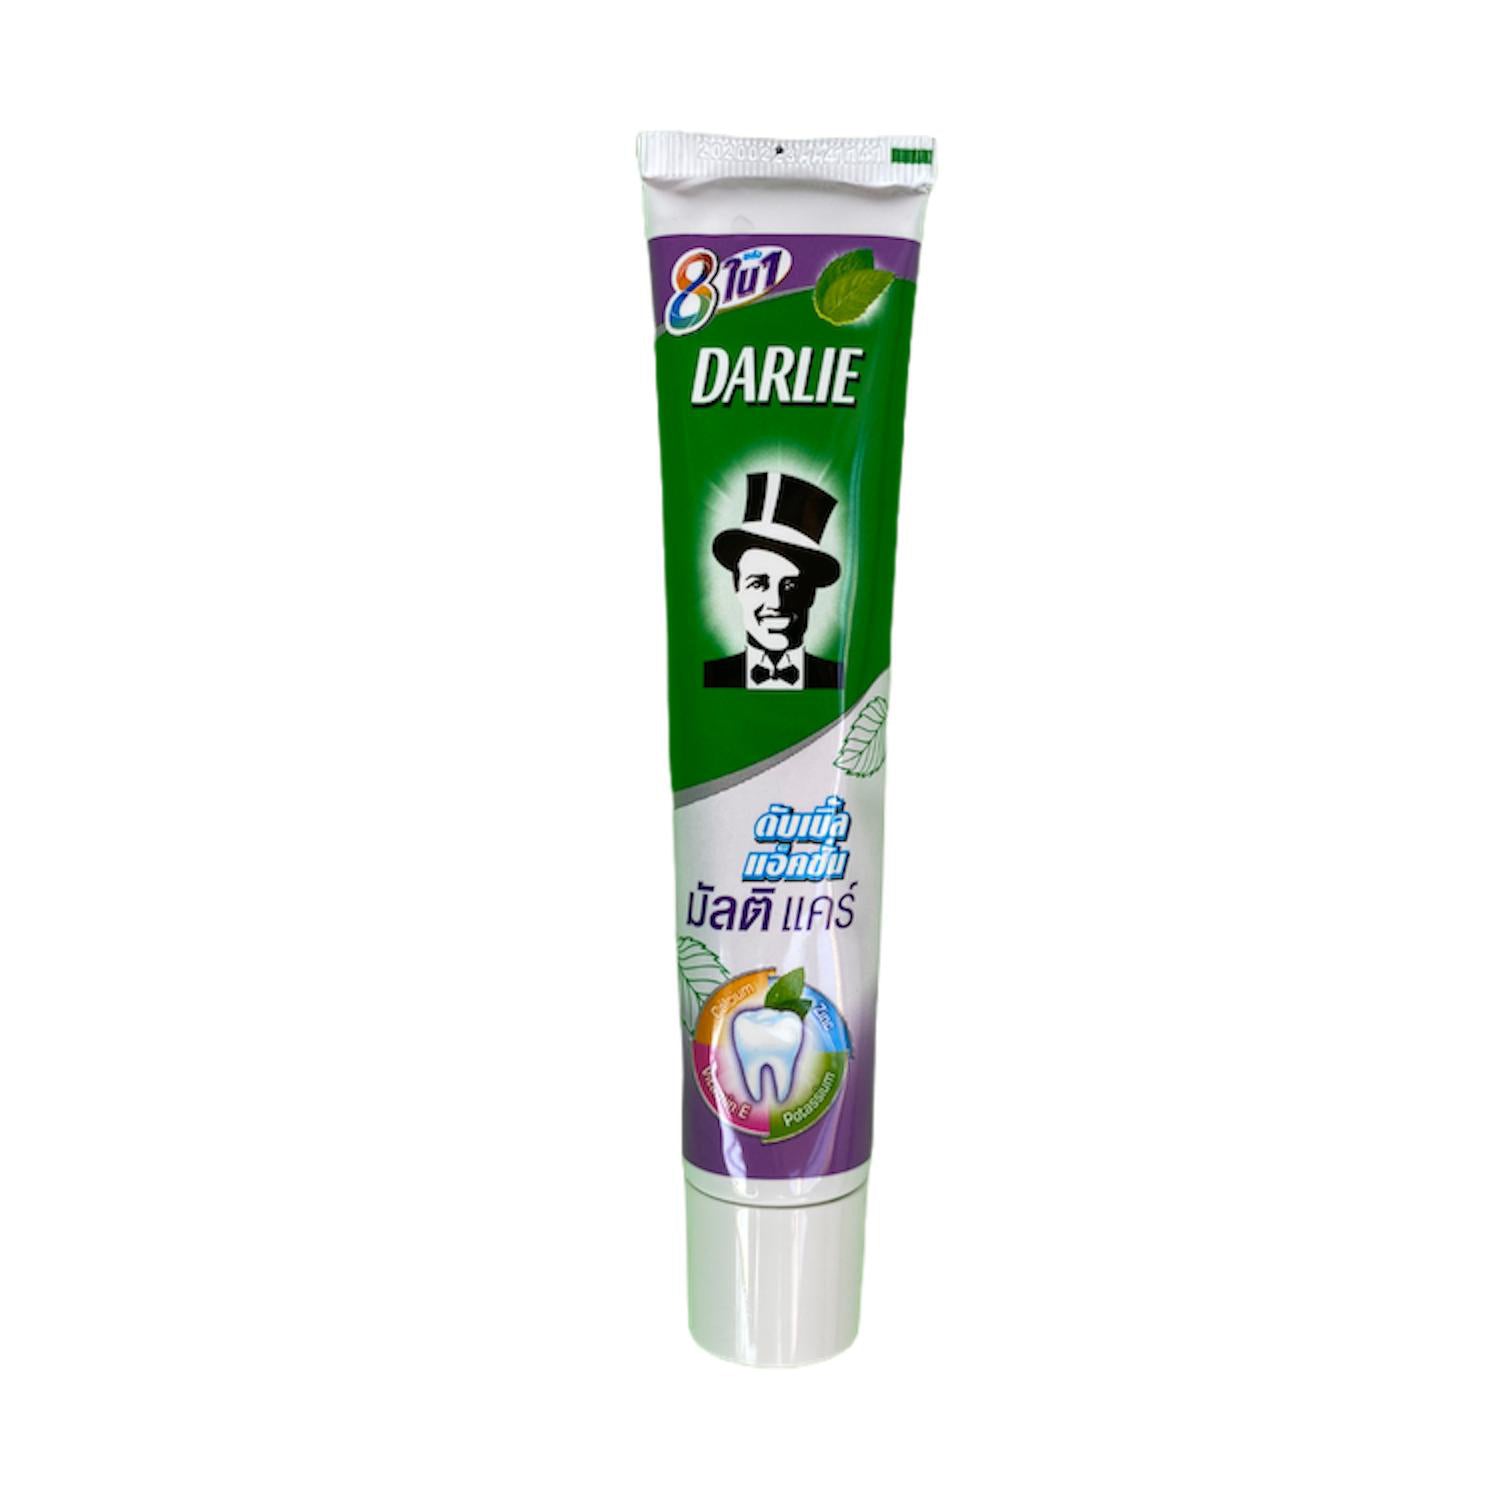 Darlie Double Action Multi Care Toothpaste 80 g., Зубная паста "Мультизабота" двойного действия: уход за полостью рта + отбеливание 80 гр.